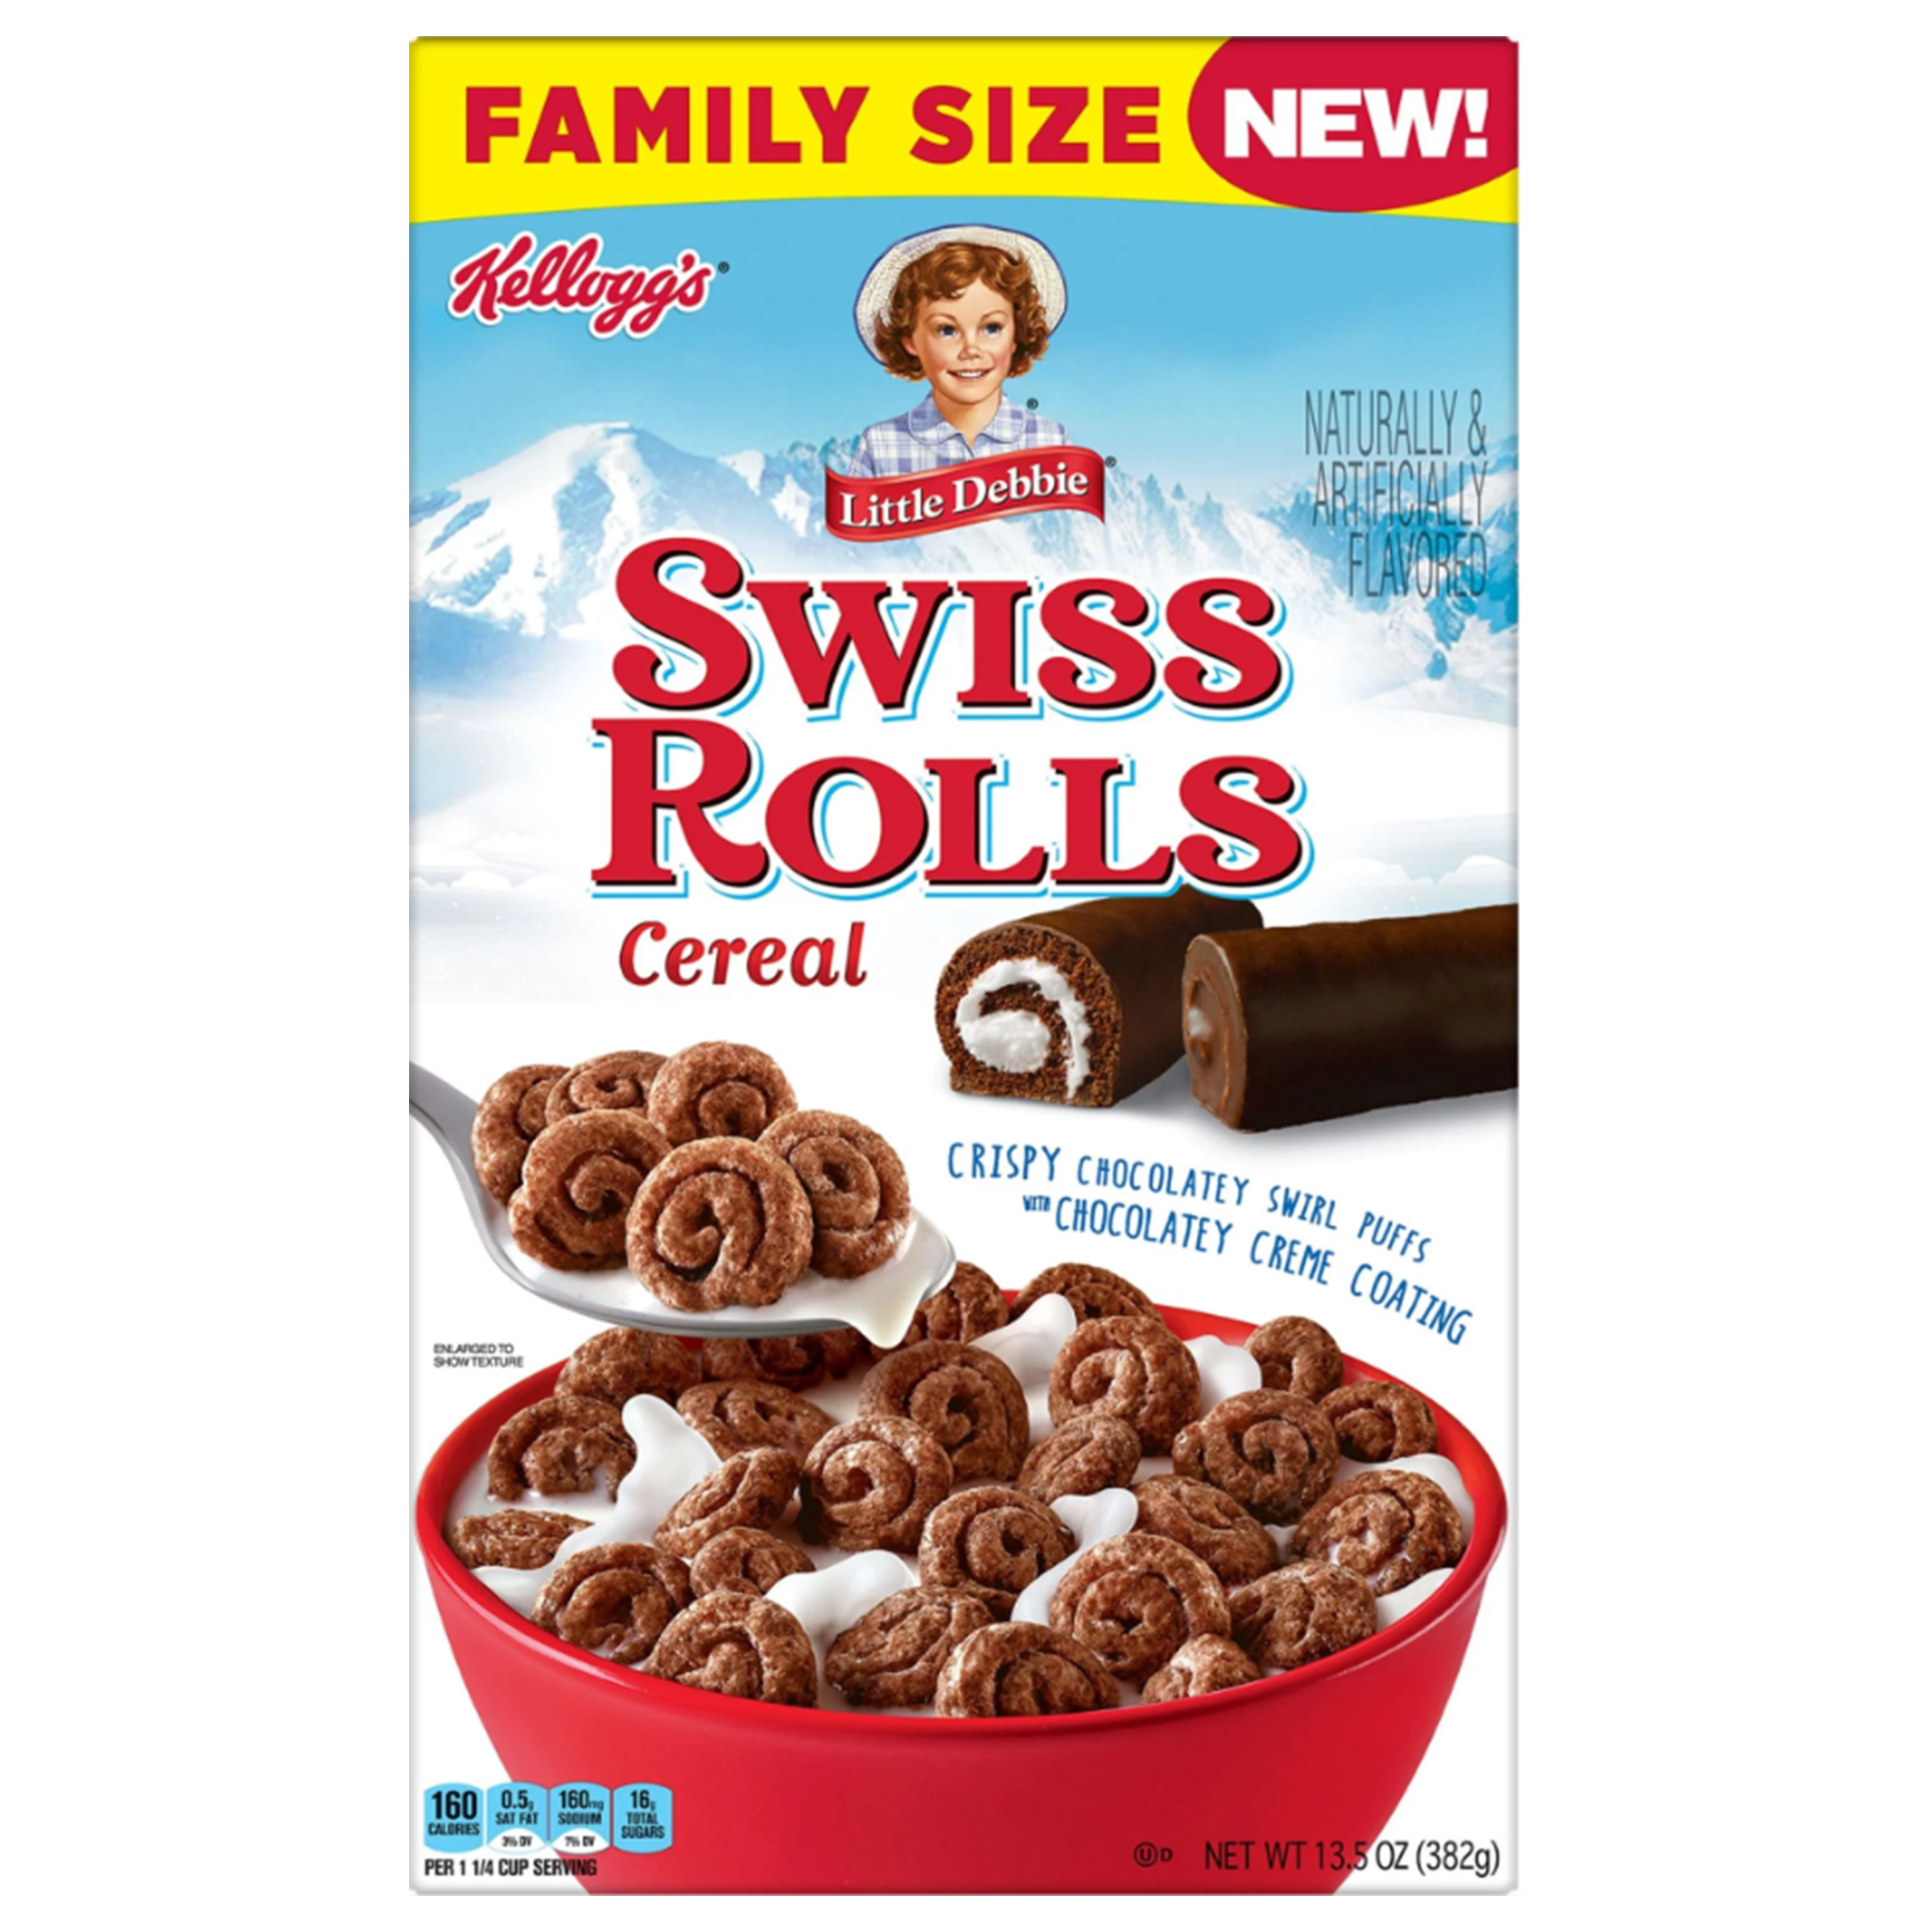 Little Debbie Swiss Rolls Cereal - Family Size